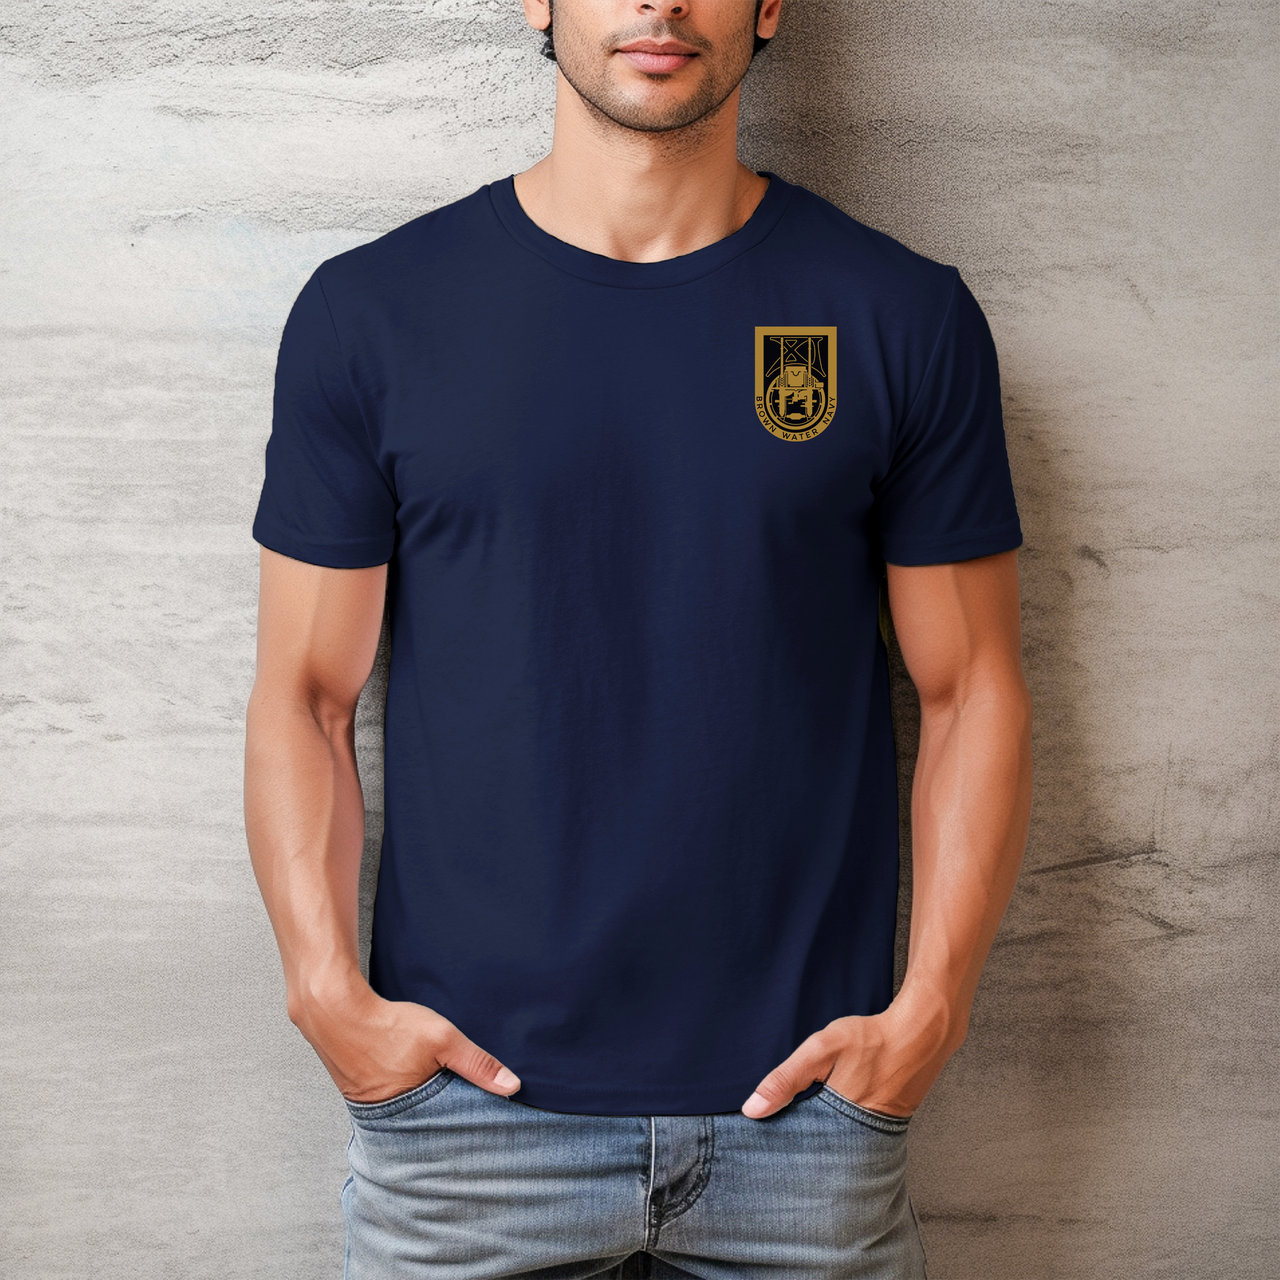 Special Boat Unit 11 v3 - SBU 11 T-Shirt (Color)